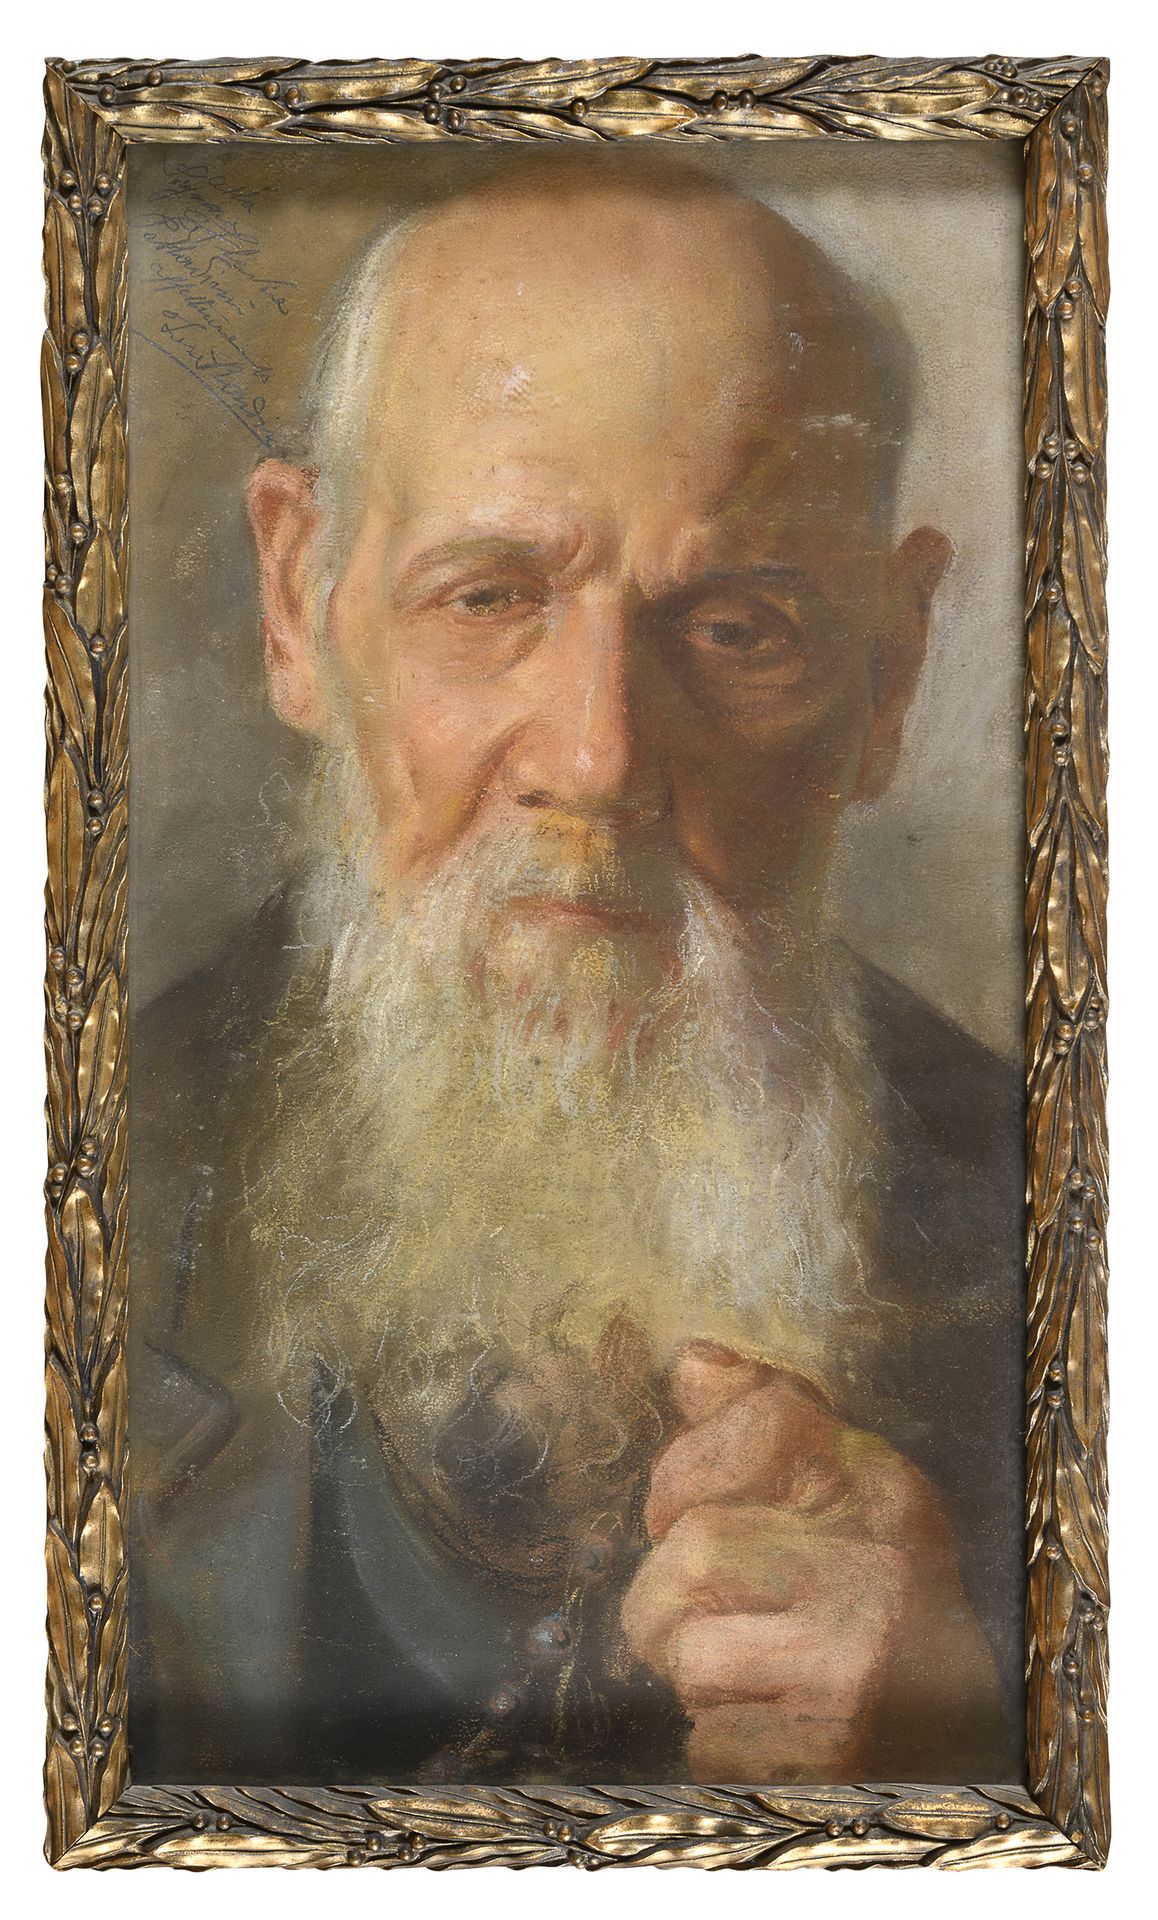 Null 俄罗斯画家，19世纪末



带着念珠的男人画像

棕色纸上的粉笔画，cm. 45 x 24

无符号

献词左上角

木制和镀金灰泥框架